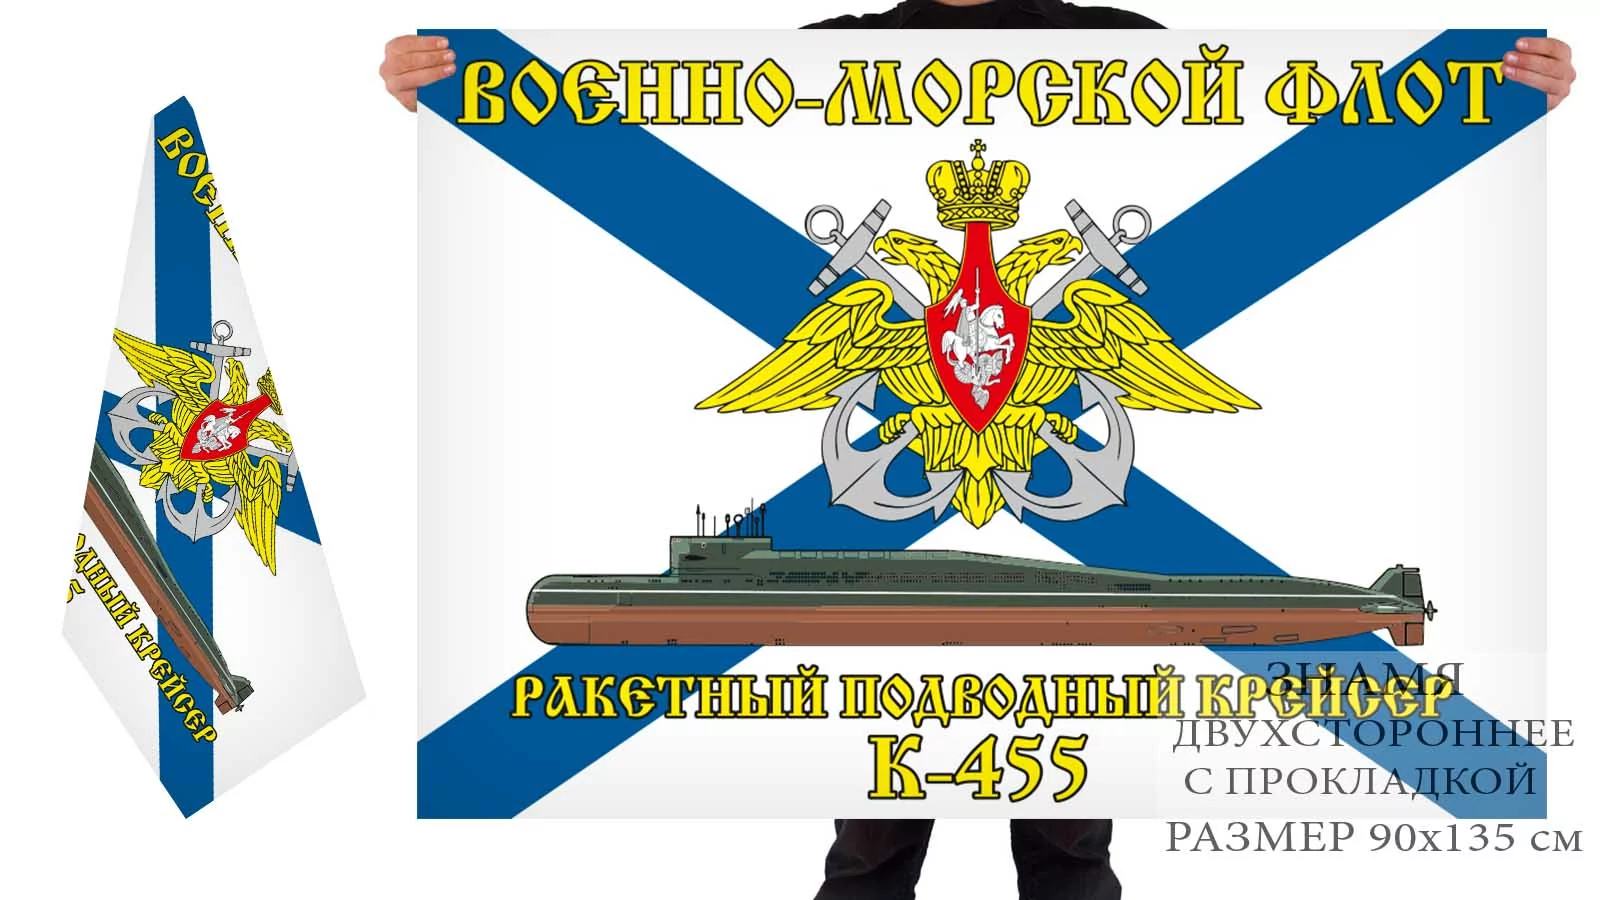 Двусторонний флаг РПКСН К-445